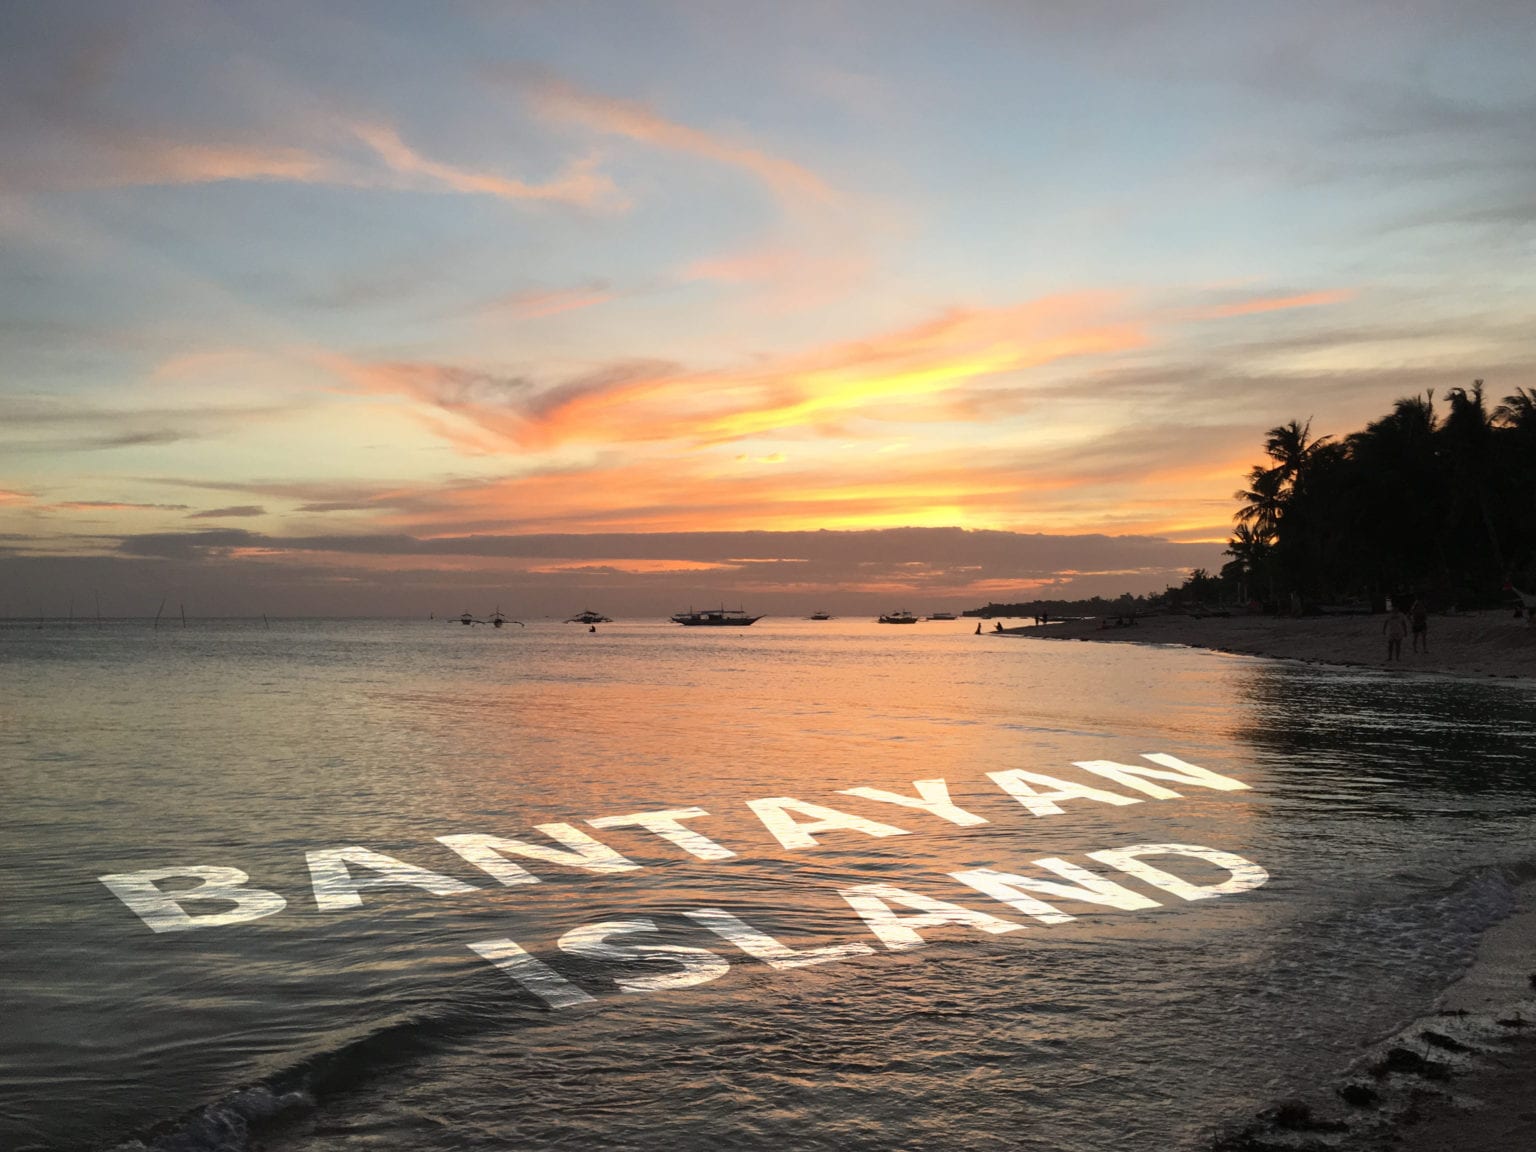 About Bantayan Island Sunset